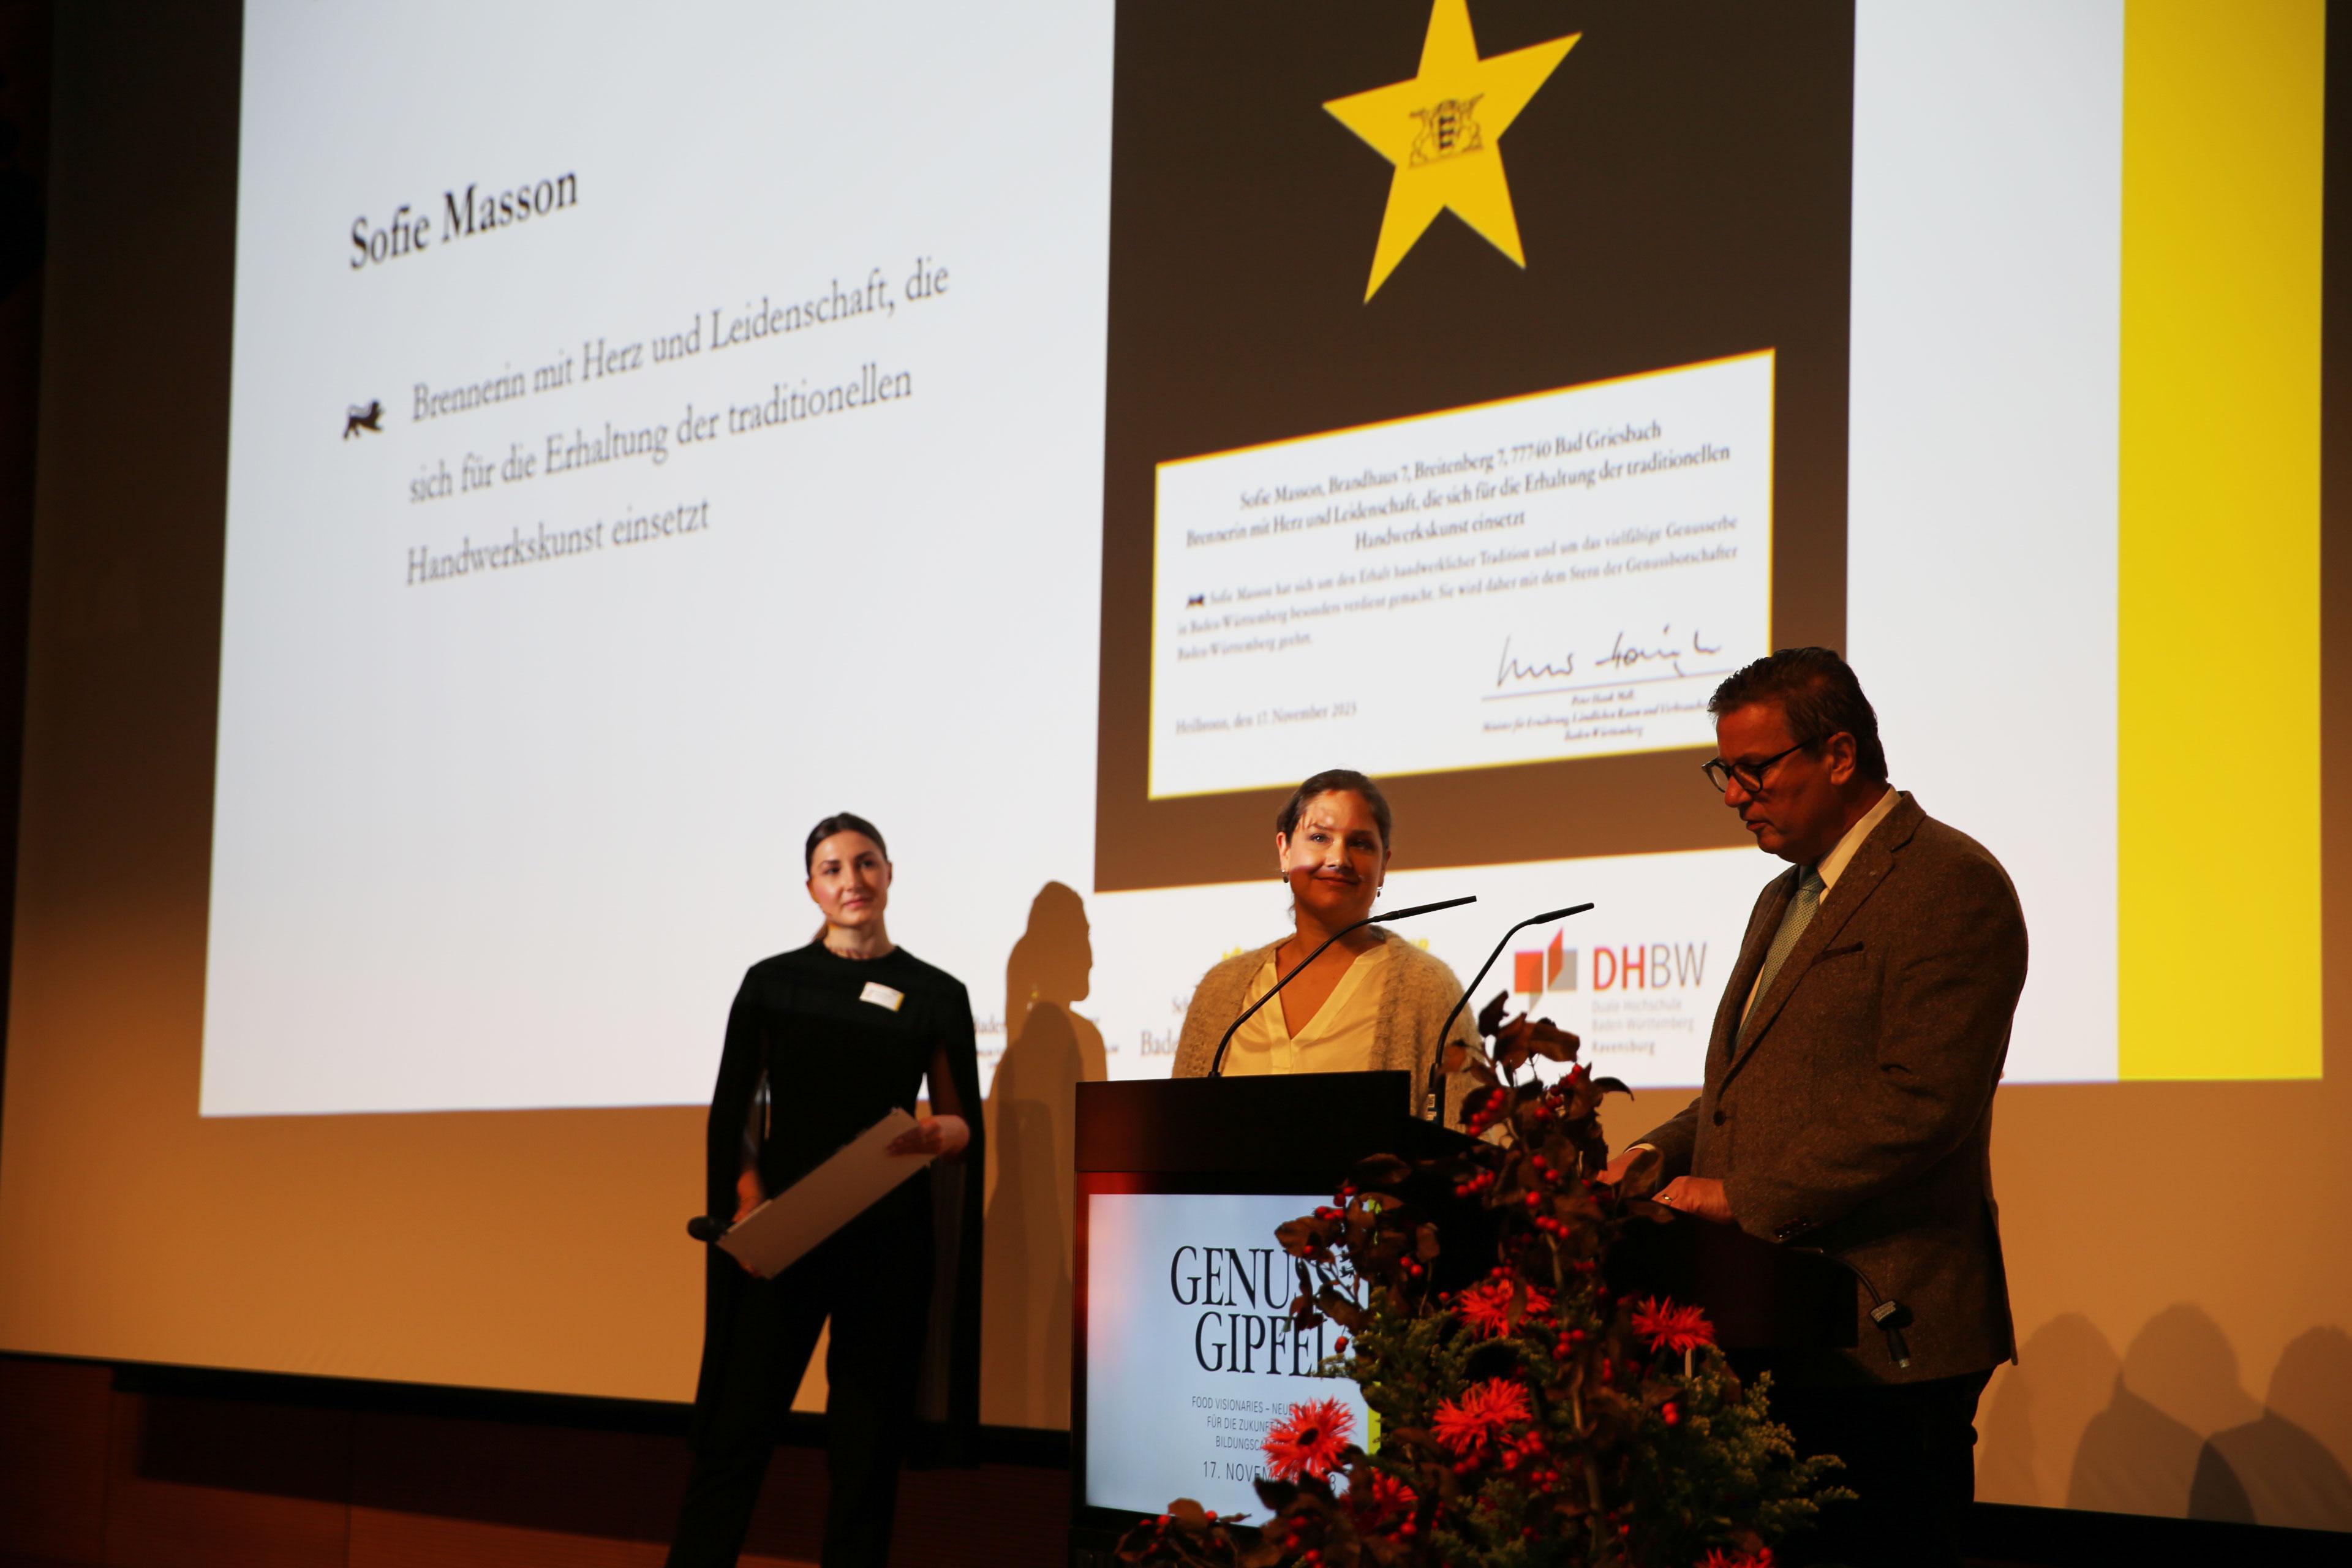 Die Auszeichnung zum Genussbotschafter des Jahres 2023 ging an Sofie Masson vom Brandhaus7 (auf dem Bild), Michael Bauhofer von der Bauhofer Käserei und Alina Meissner-Bebrout vom Sternelokal Bi:broud (nicht im Bild).